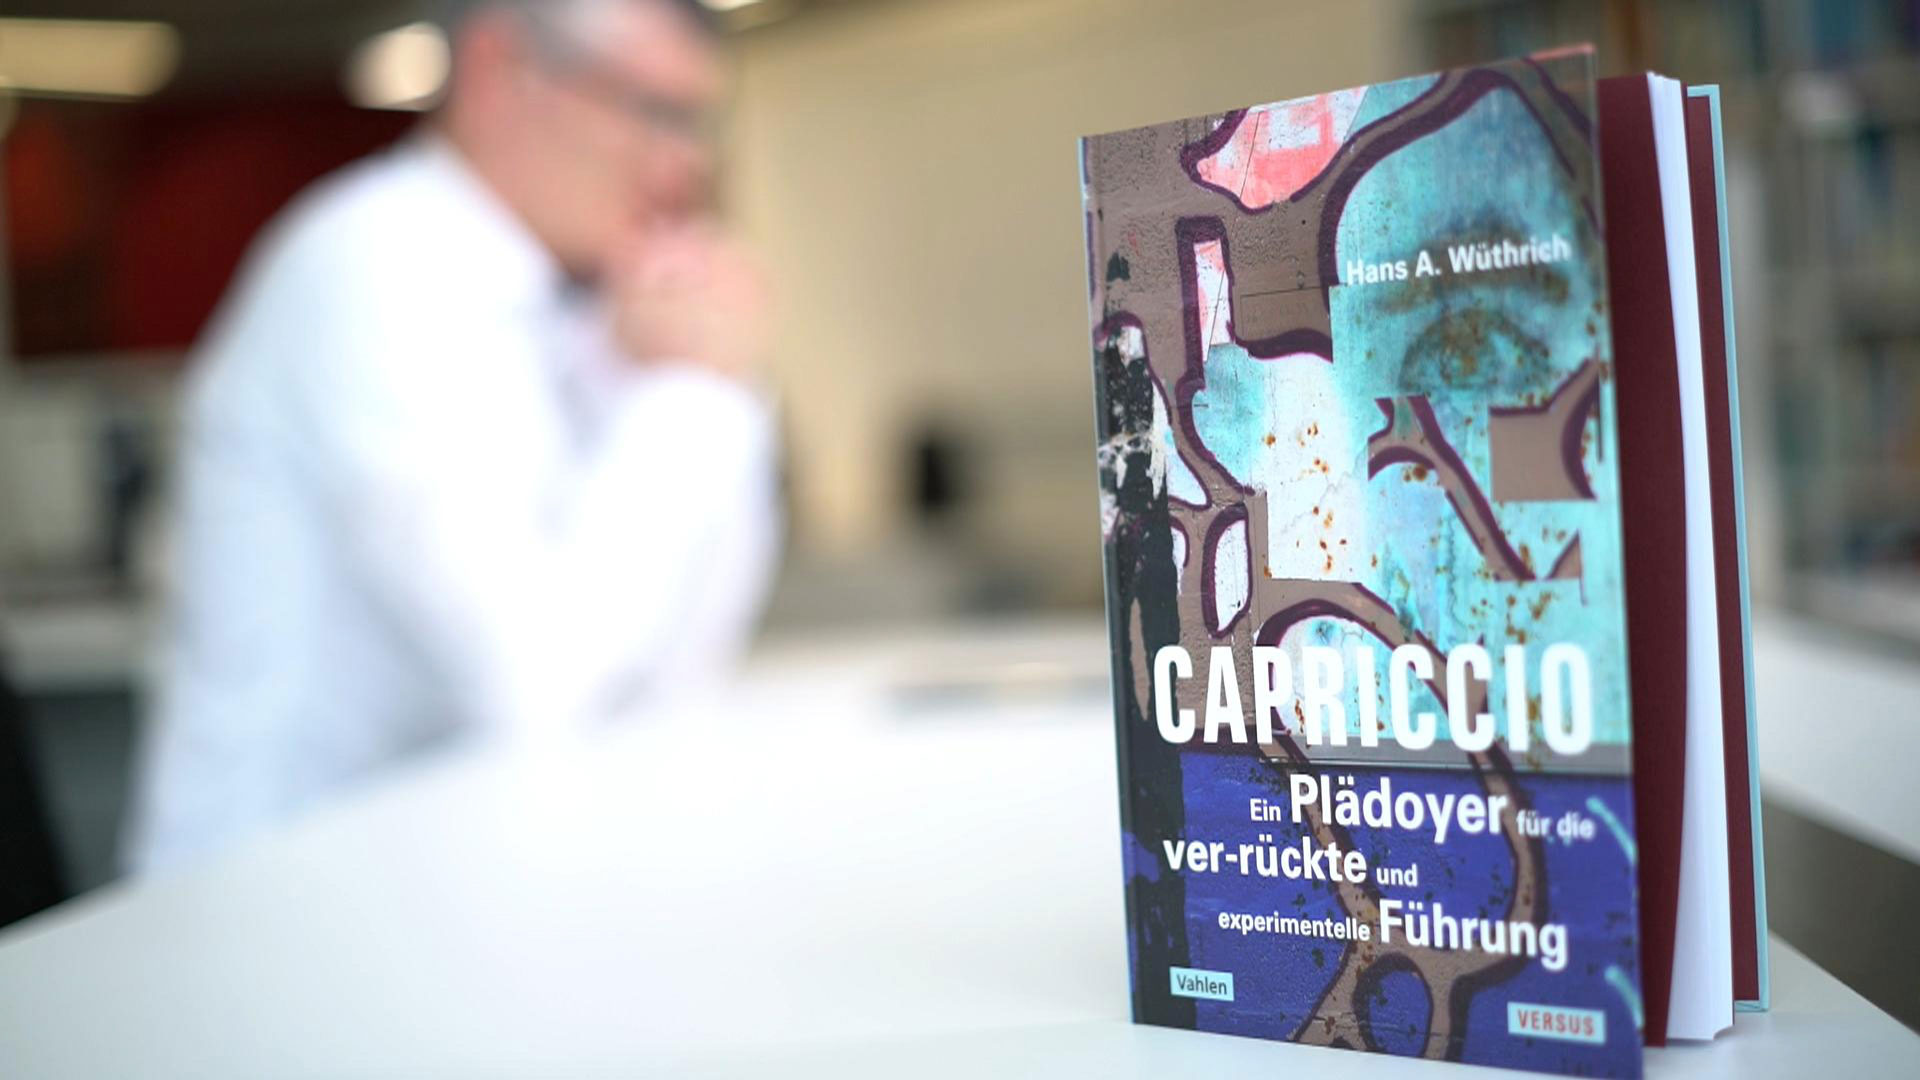 Vorstellung des Buches "Capriccio" von Prof. Wüthrich